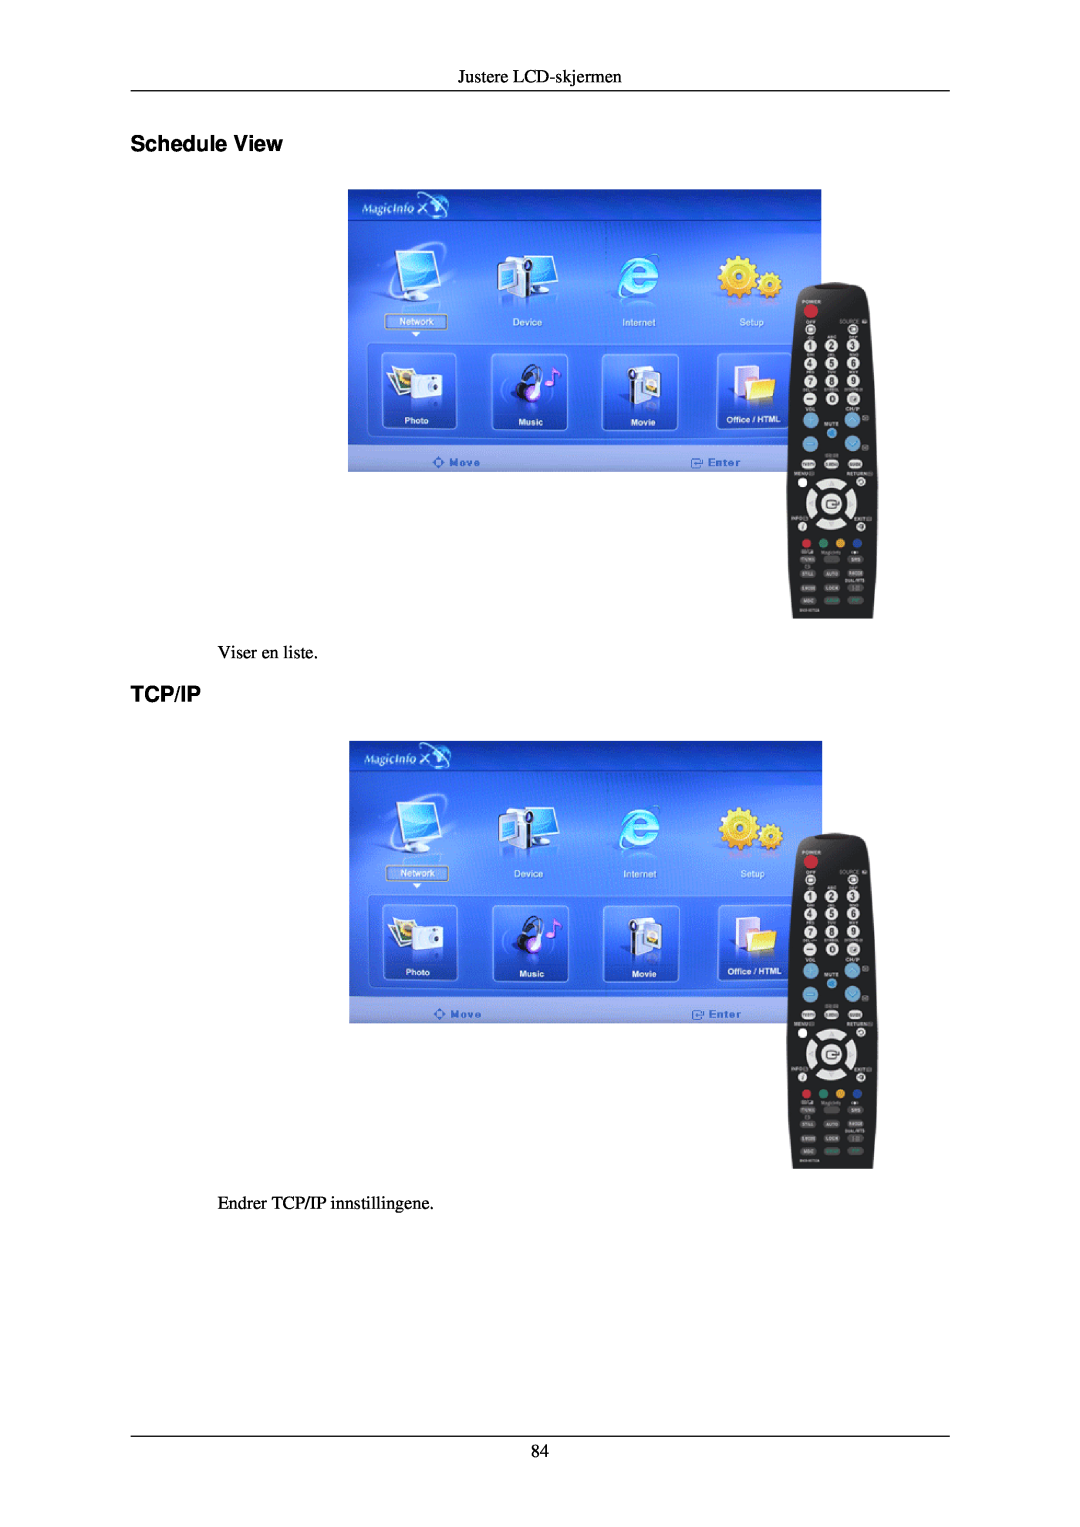 Samsung LH40TCUMBC/EN manual Schedule View, Tcp/Ip, Justere LCD-skjermen, Viser en liste, Endrer TCP/IP innstillingene 